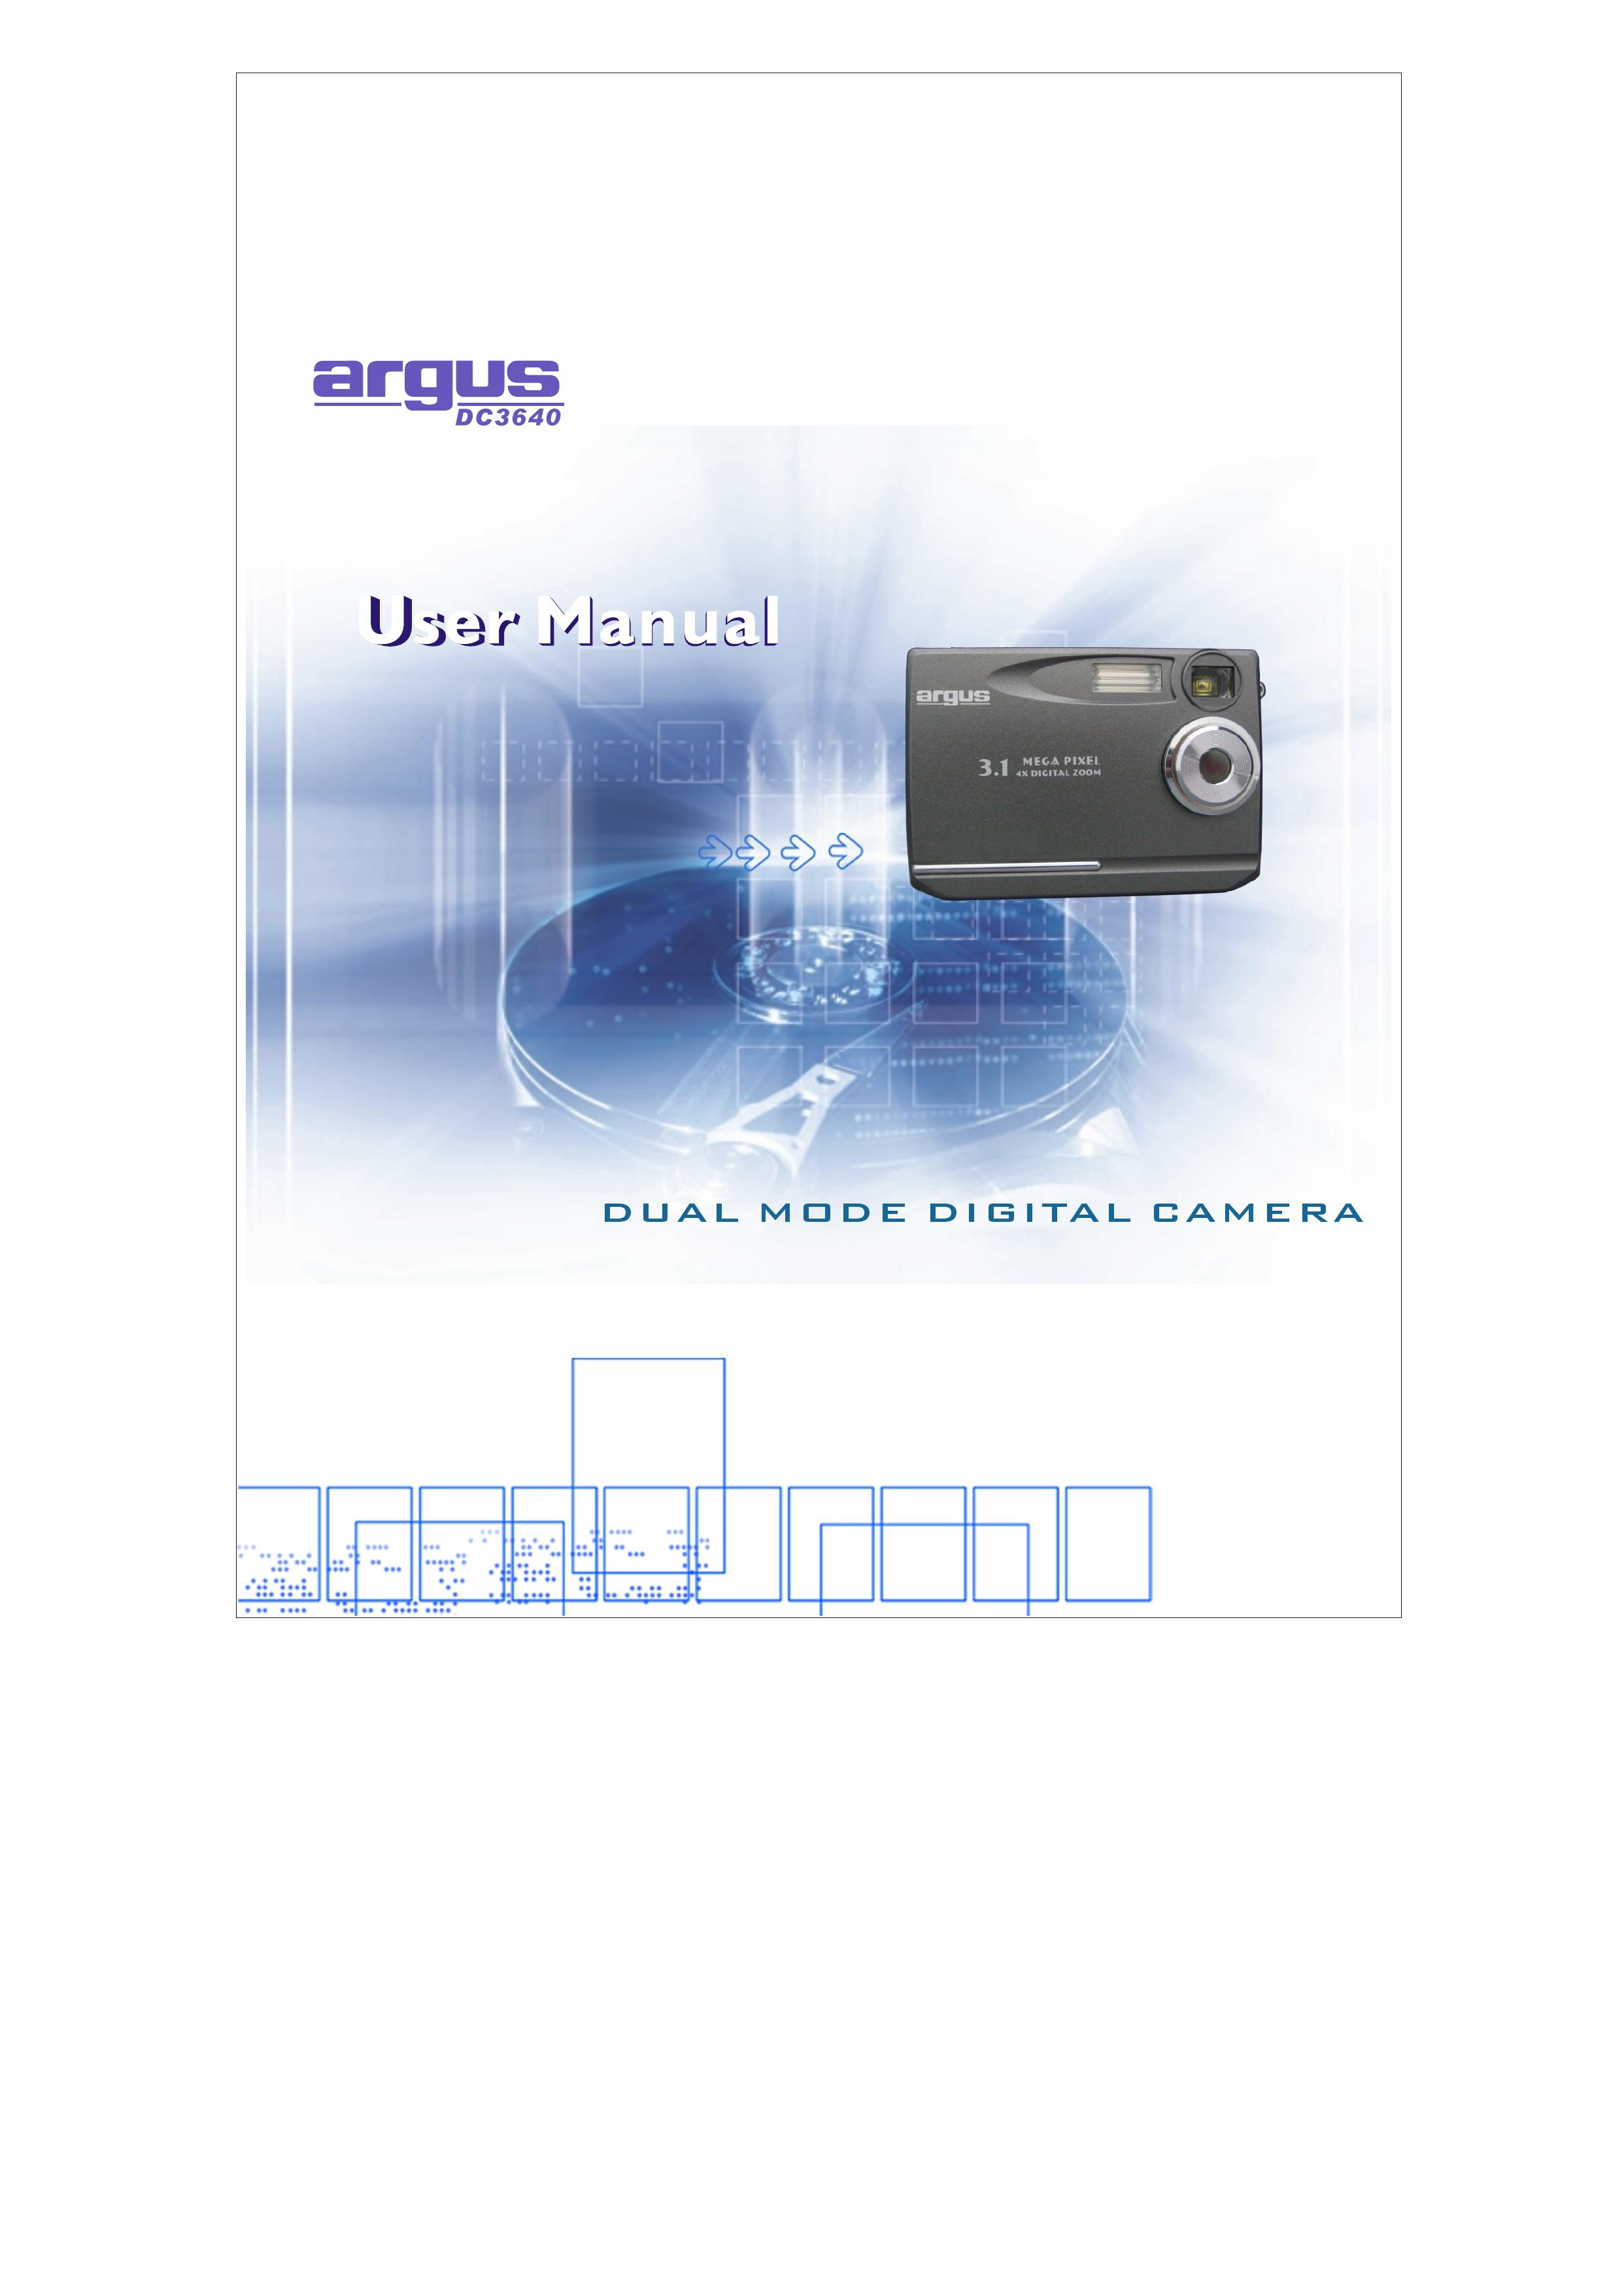 Argus Camera 3640 Digital Camera User Manual